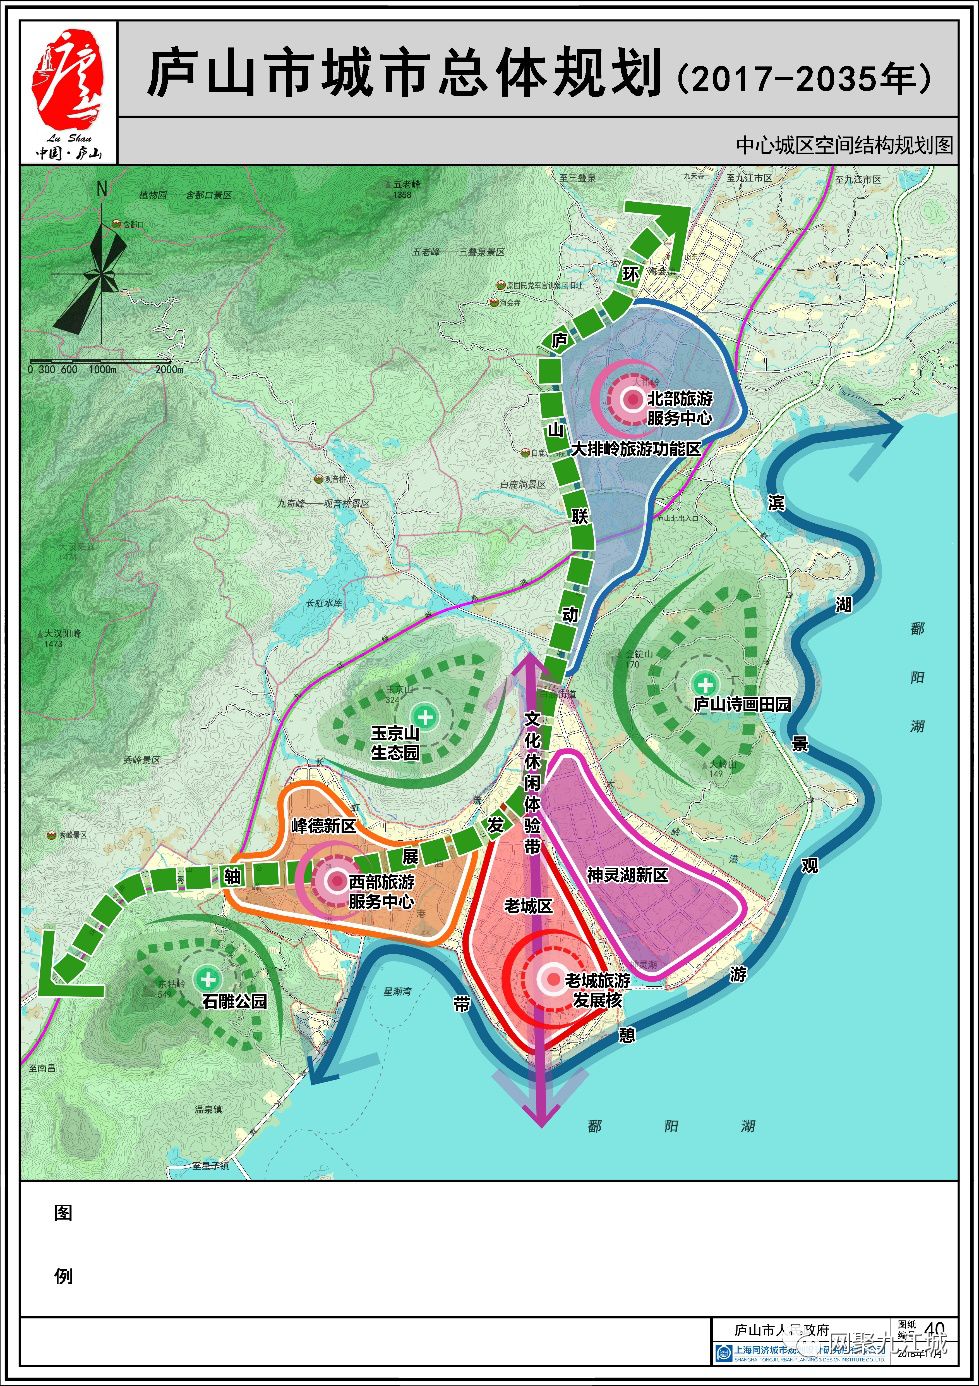 重磅消息:《庐山市城市总体规划(2017-2035年)》进入成果批前公示阶段